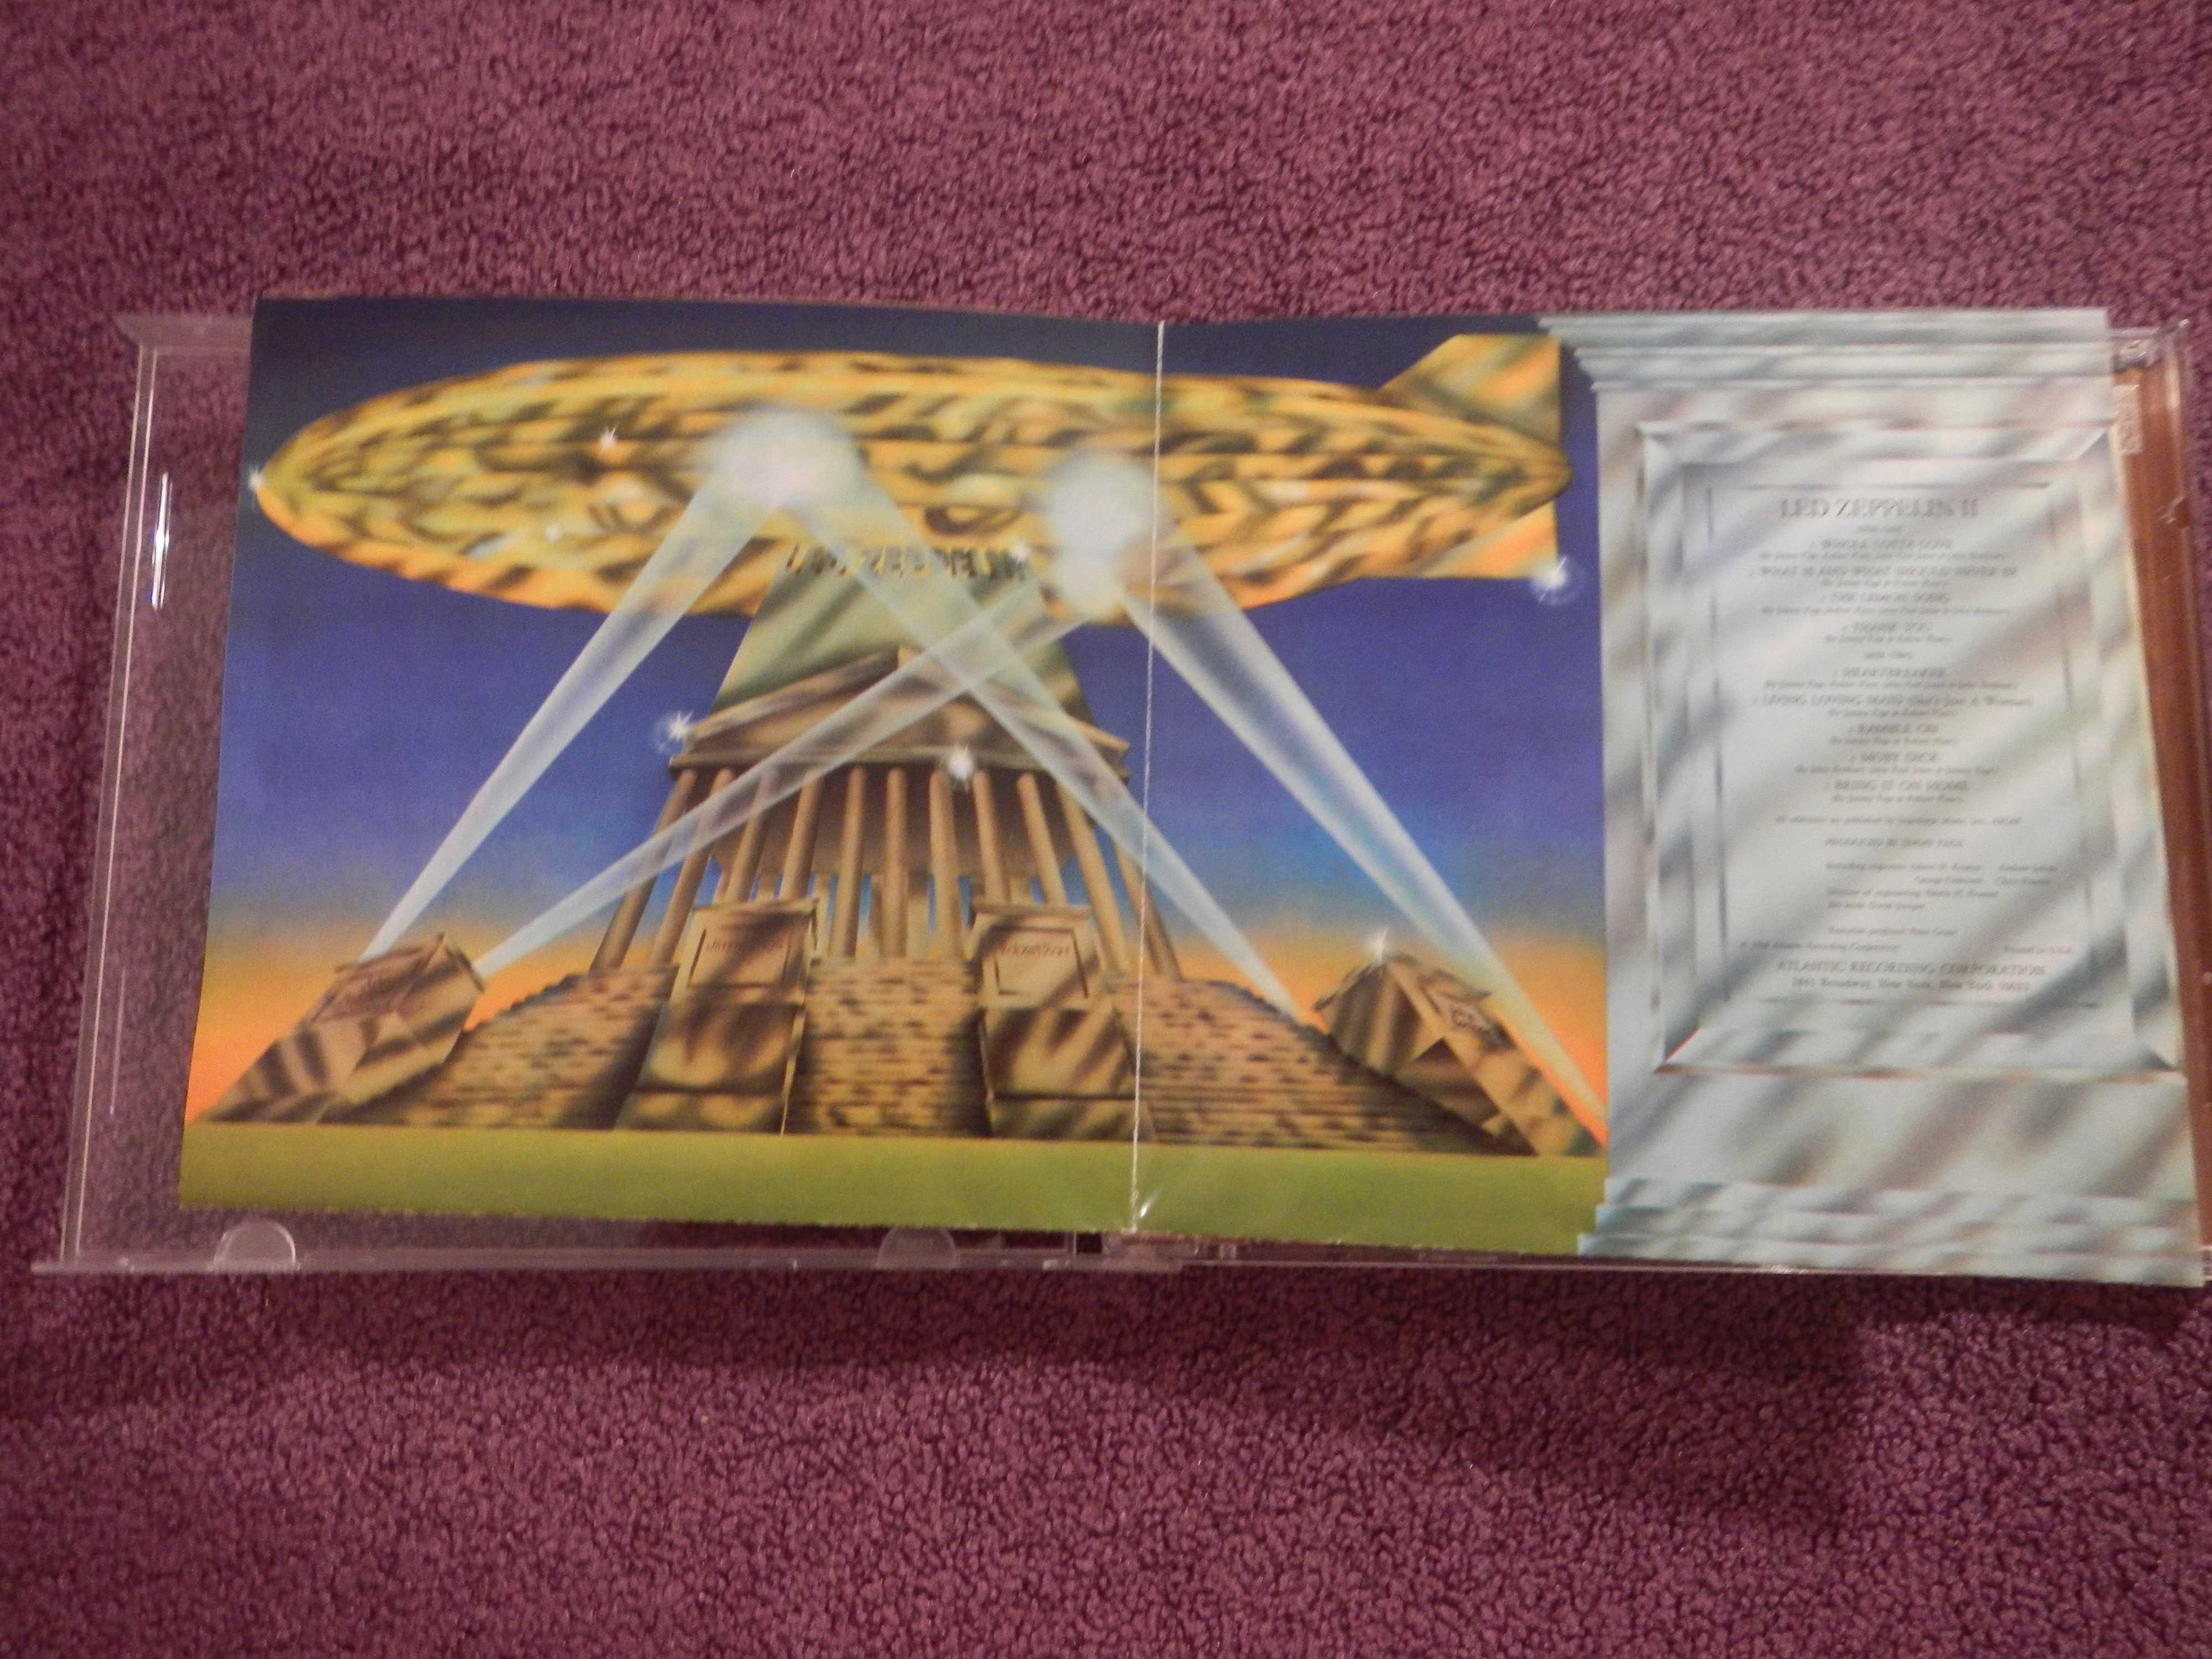 CD Led Zeppelin - II - 1969; -In through the out door - 1979 (2in1)